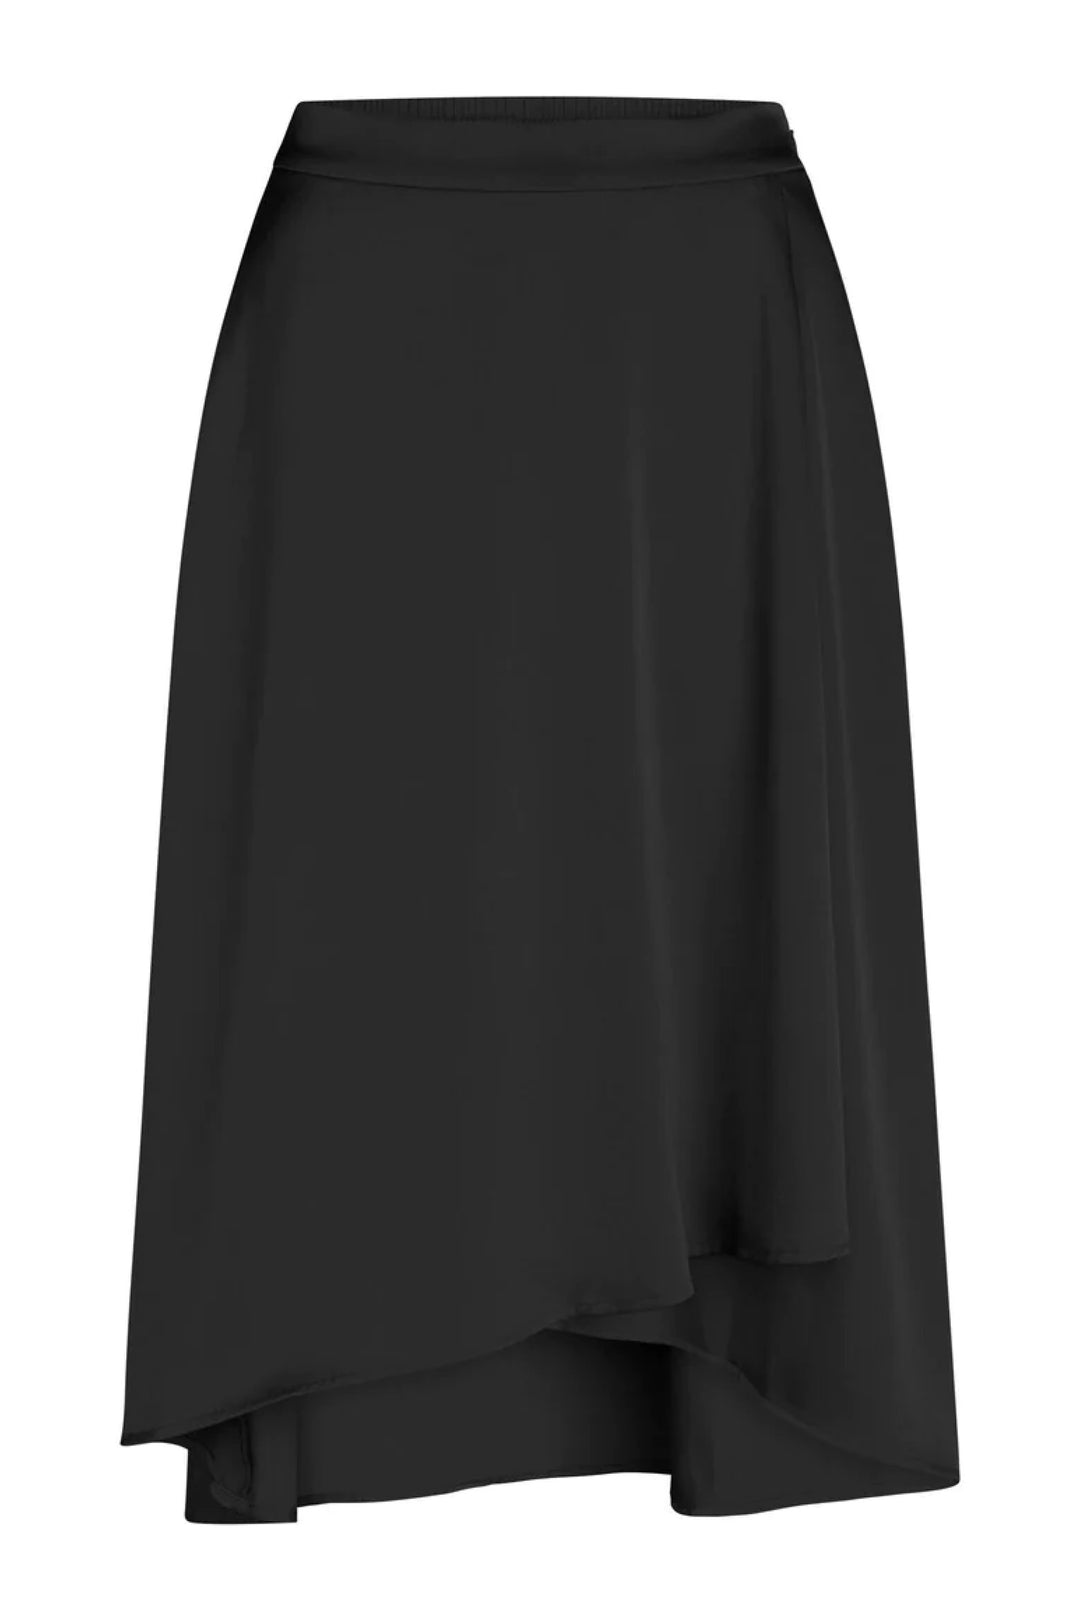 Bruuns Bazaar Women RaisellasBBEnya skirt Skirt Black